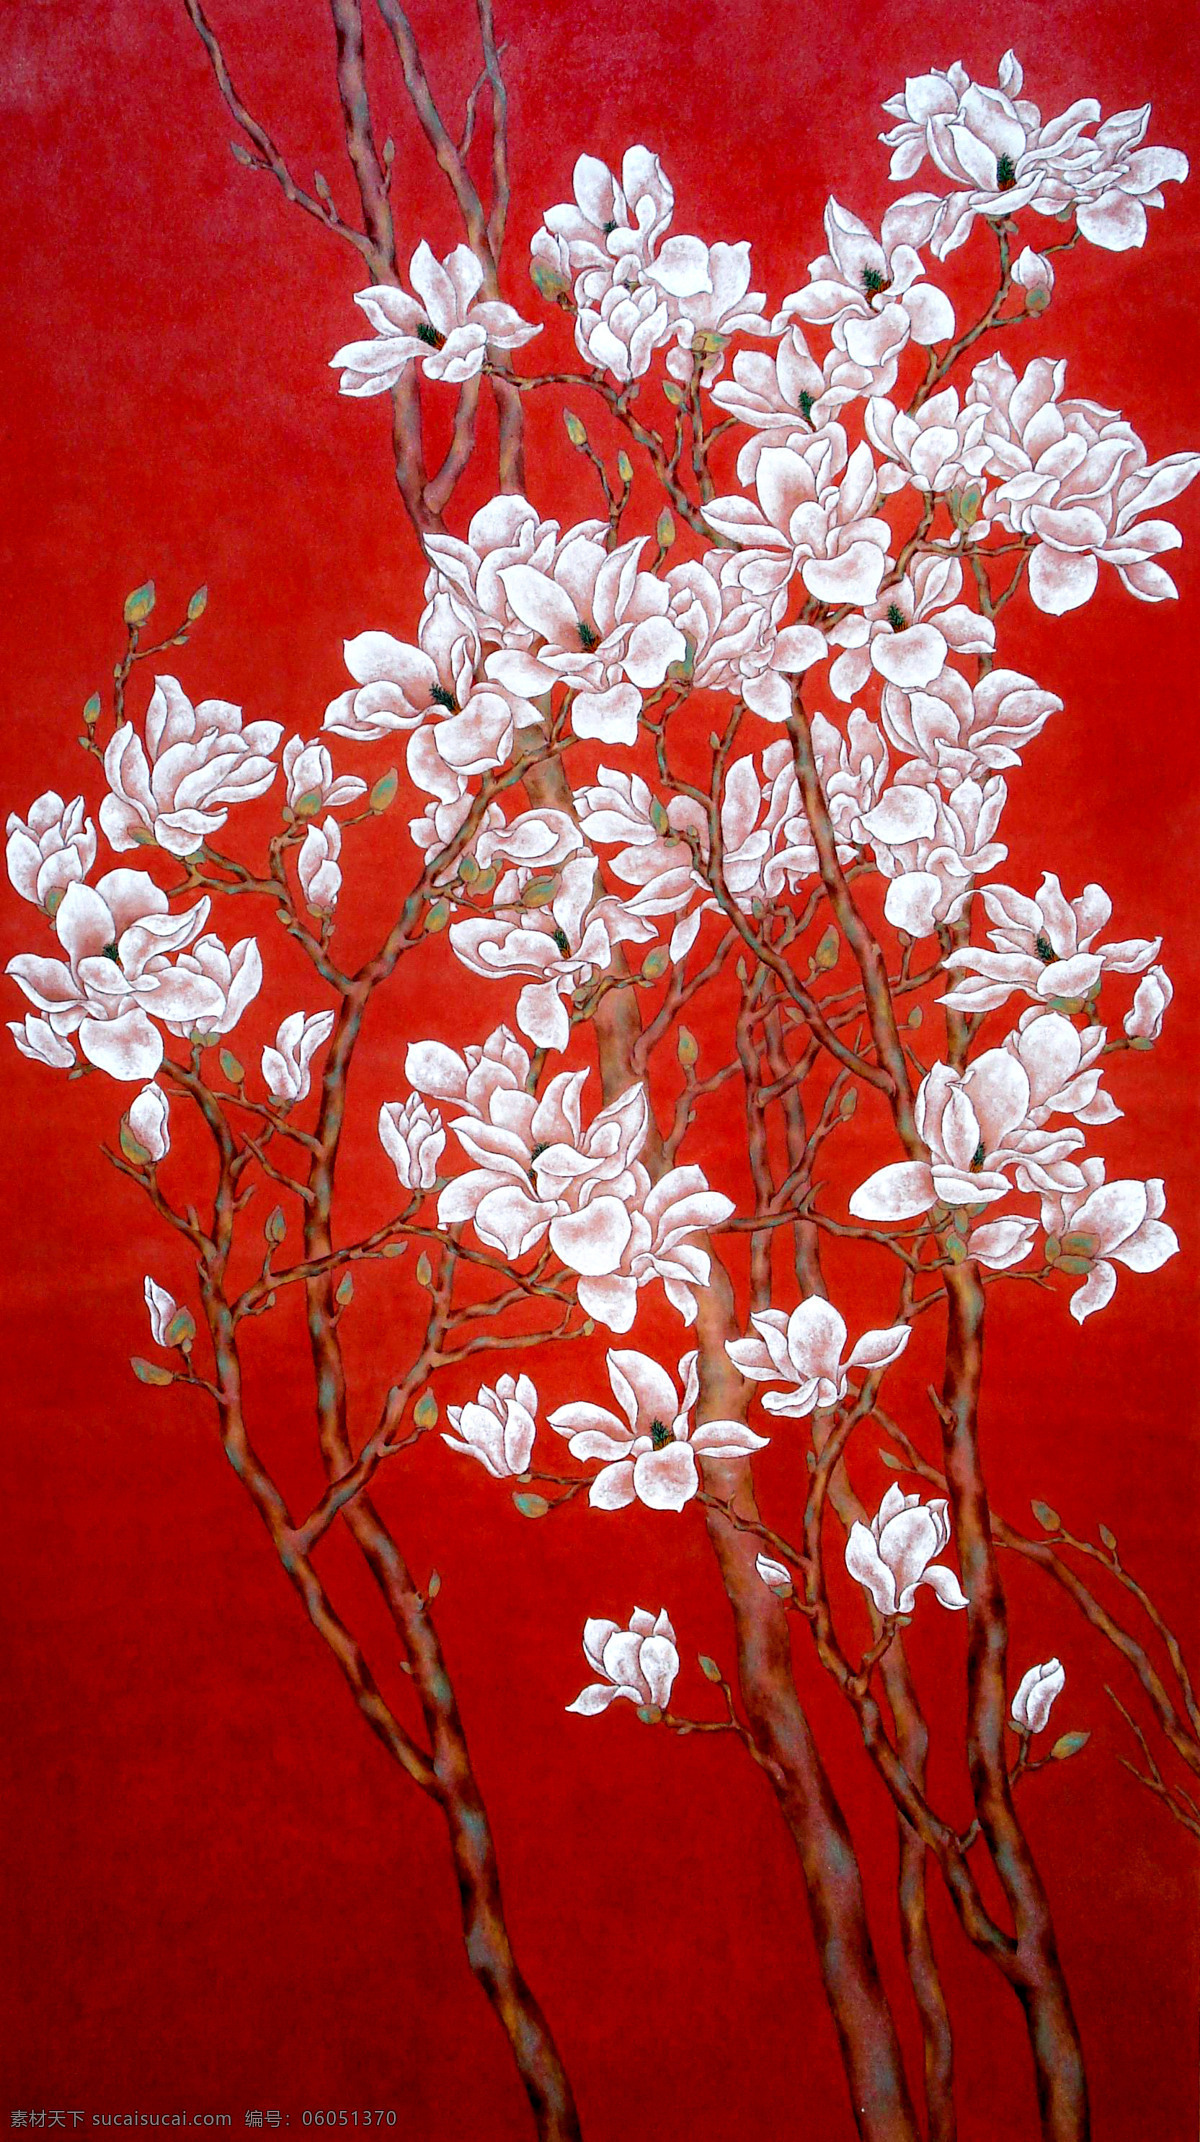 工笔 花朵 工笔画 红色 植物 中国风 插画集